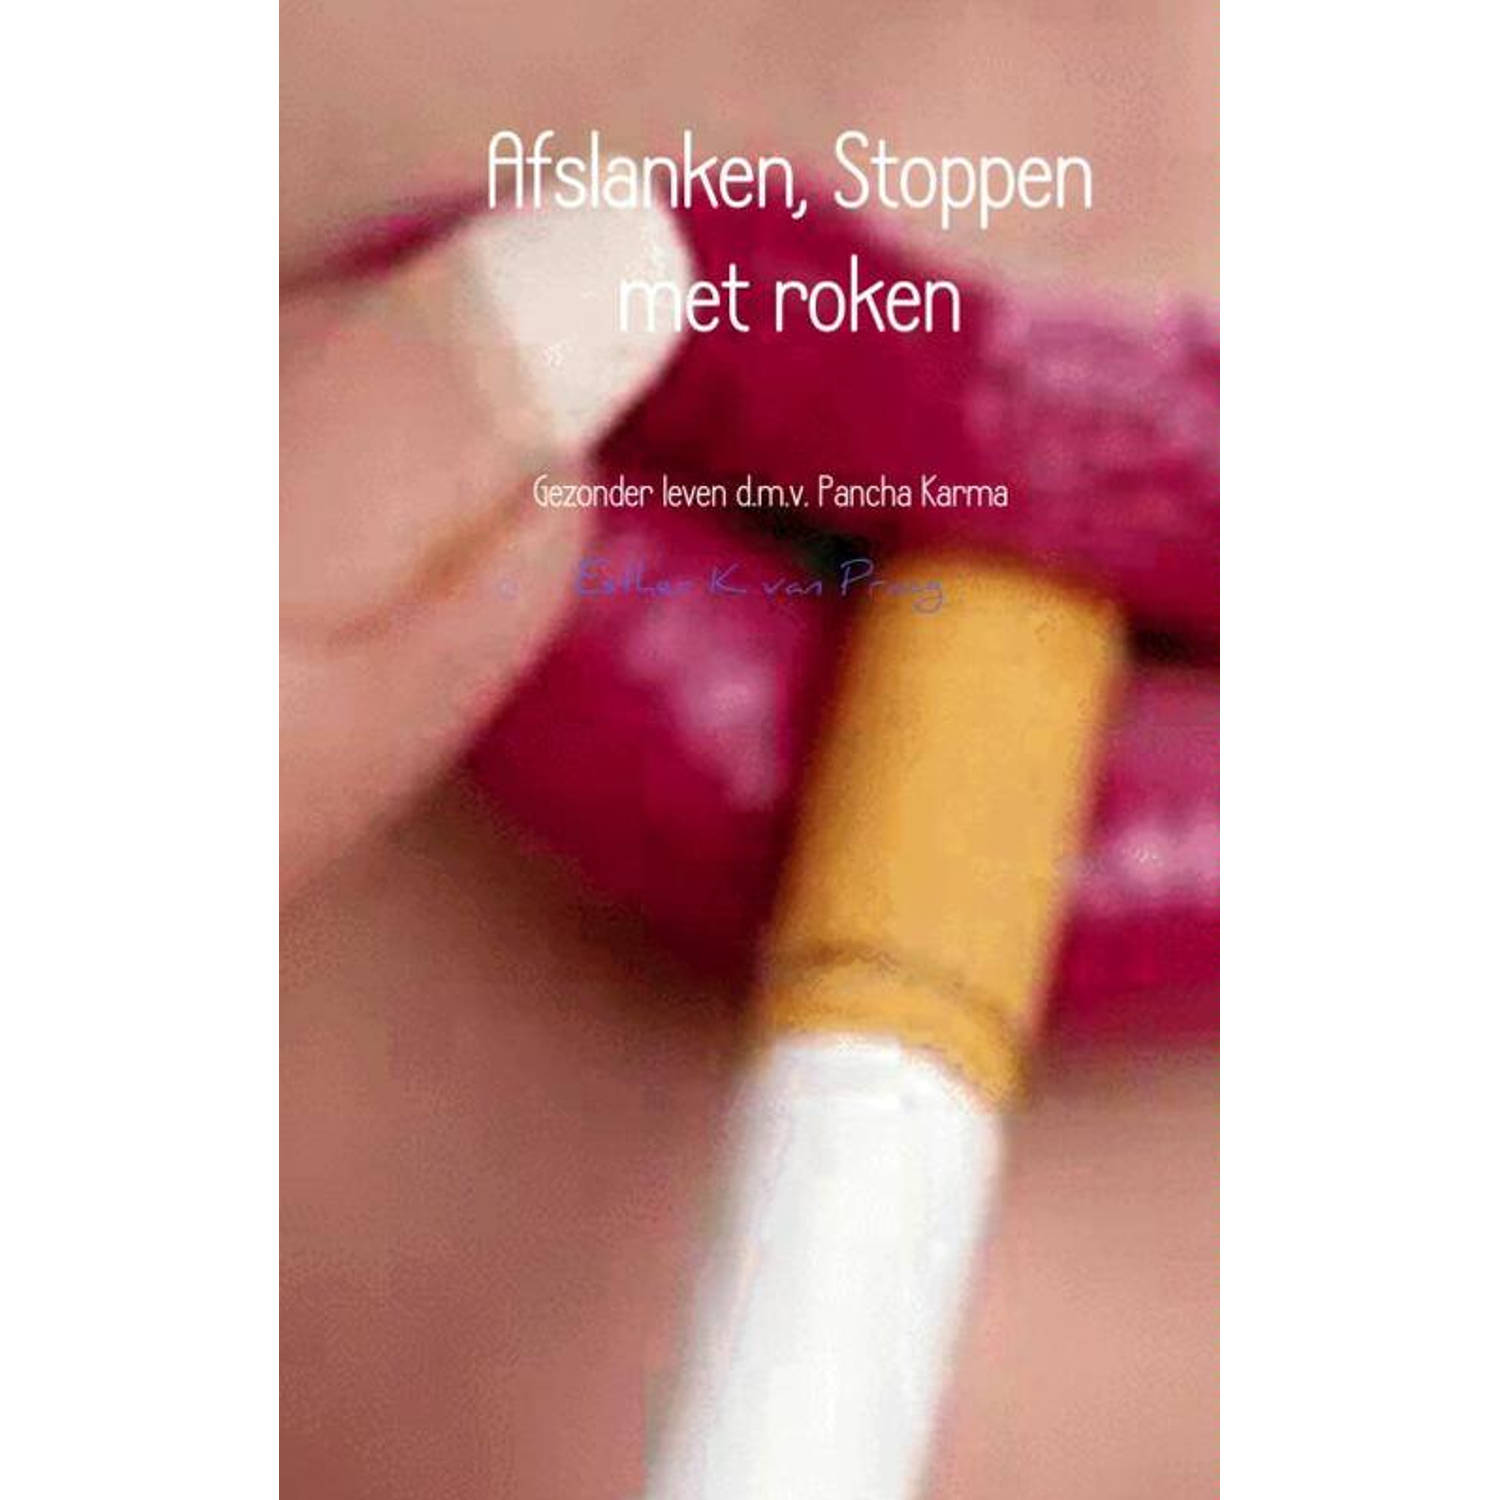 Afslanken, Stoppen met roken. Gezonder leven d.m.v. Pancha Karma, Esther K. van Praag, Paperback